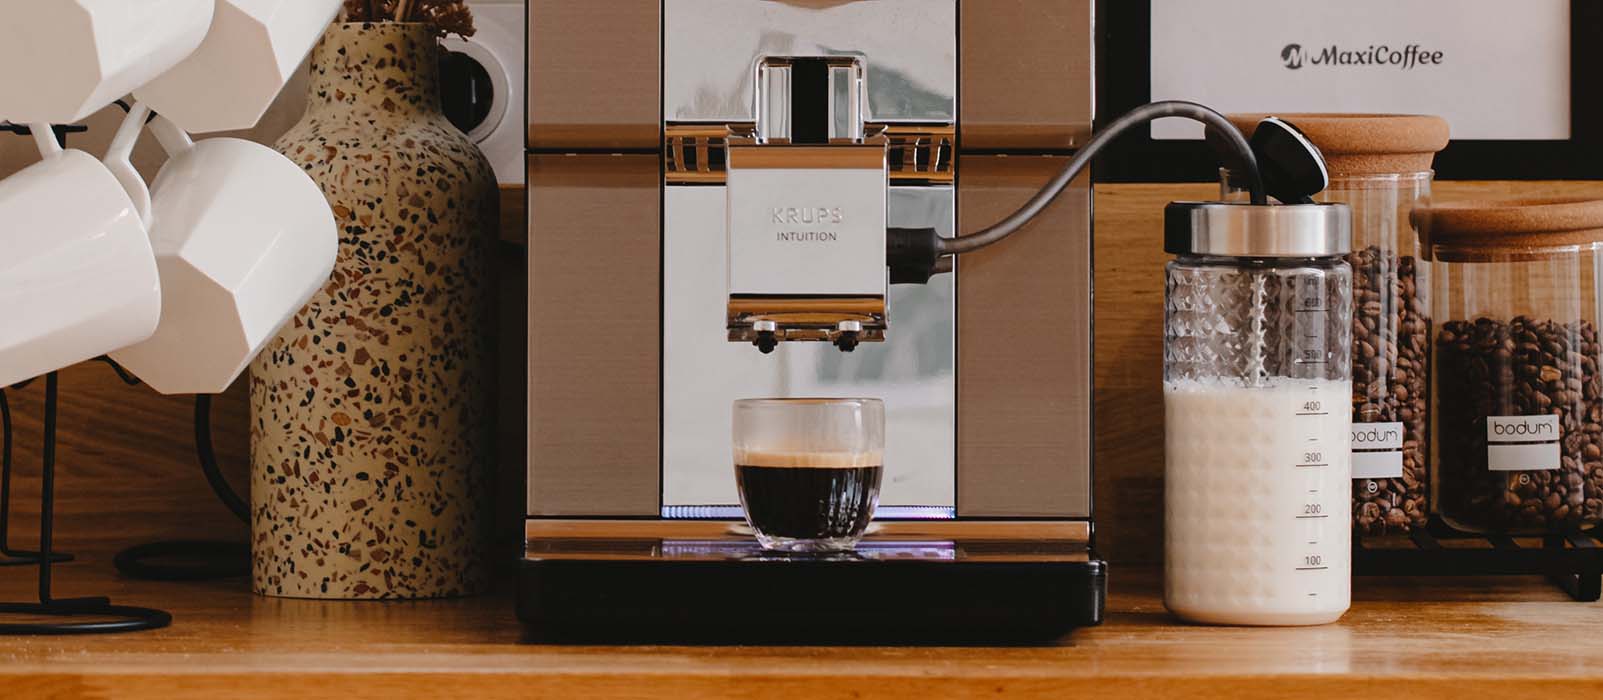 Machine à café, expresso et Cafetière - MaxiCoffee